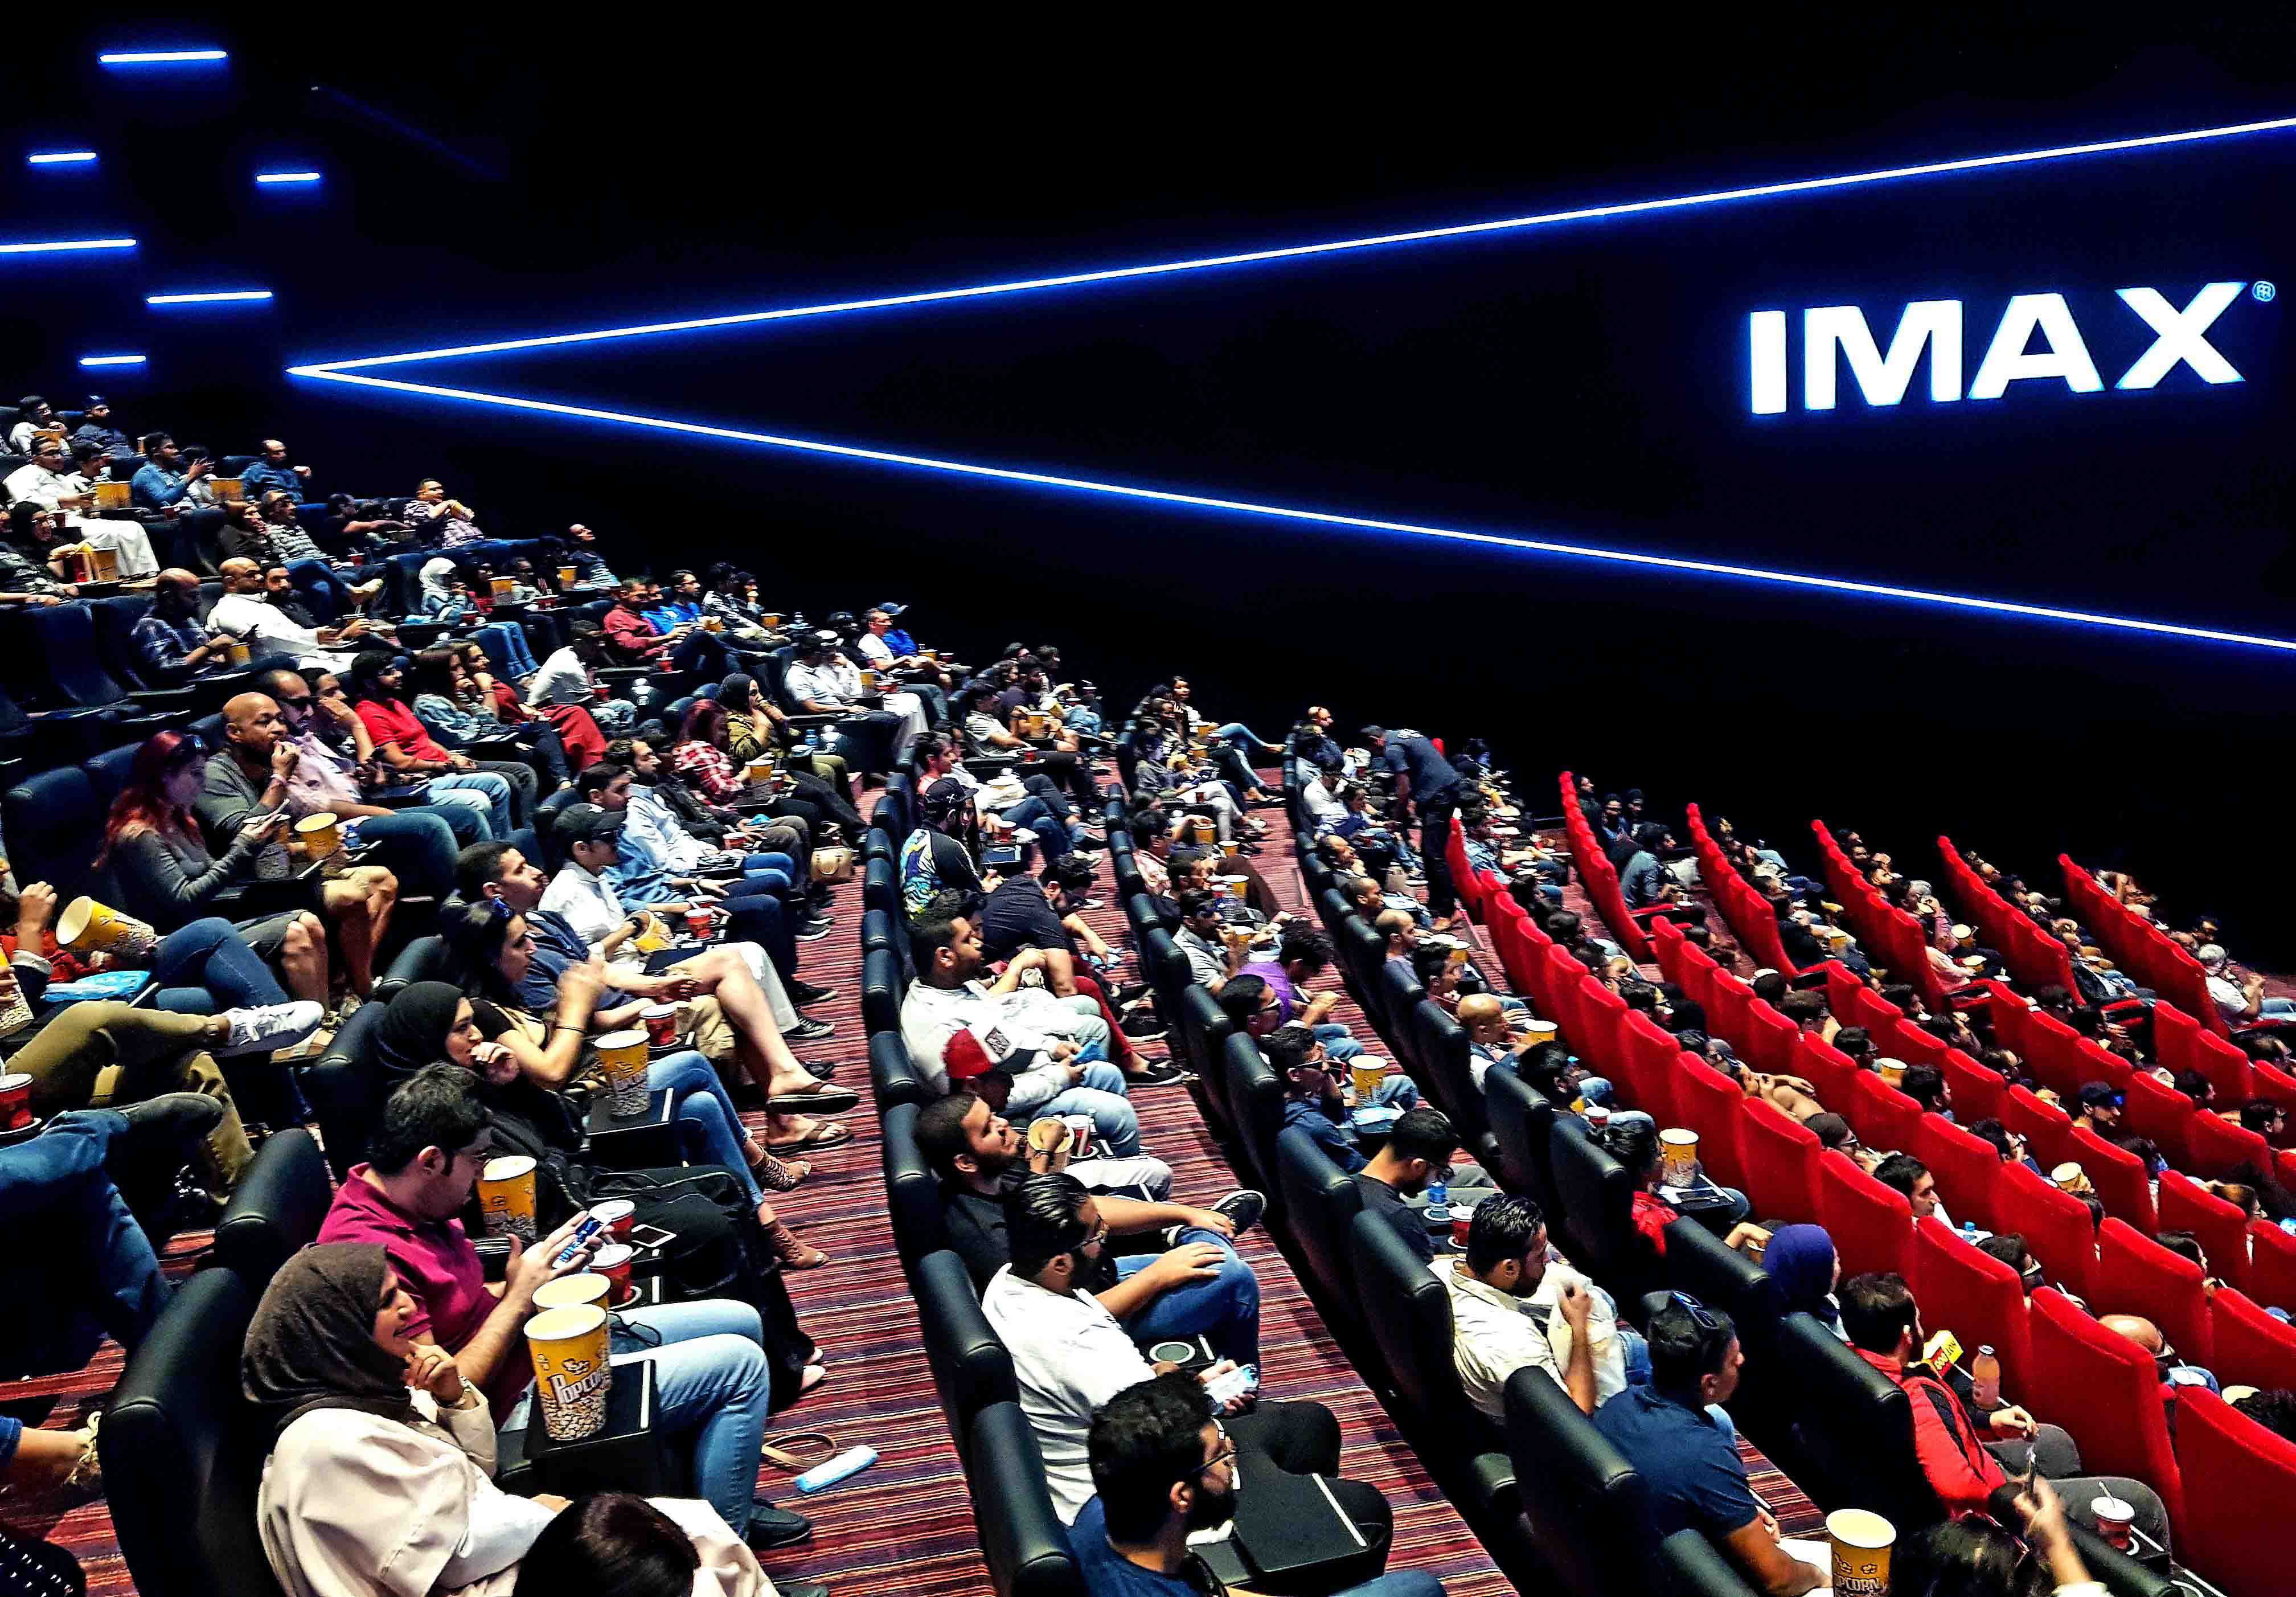 سينما IMAX